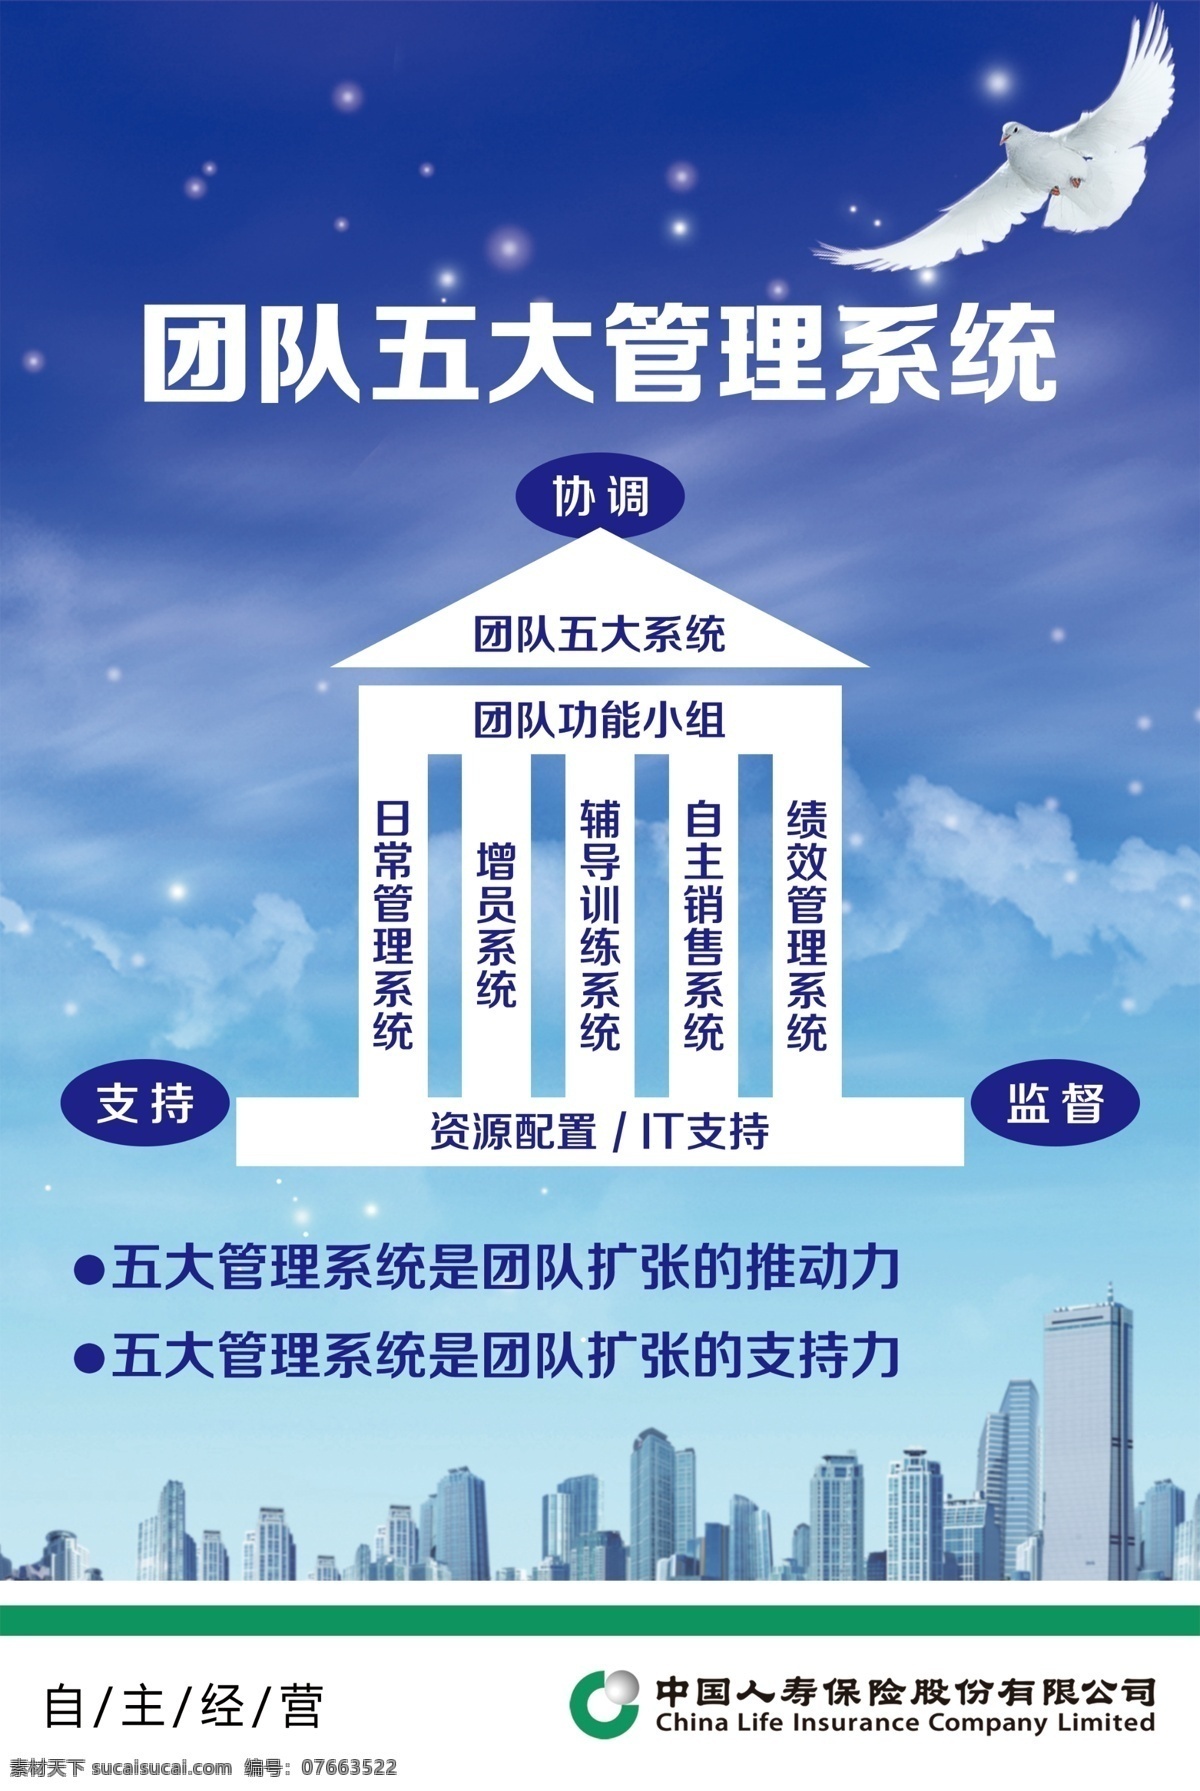 中国 人寿 团队 管理系统 中国人寿 五大 功能小组 日常 增员 蓝色背景 城市 楼房建筑 人寿logo 鸽子 源文件 分层 展板模板 海报